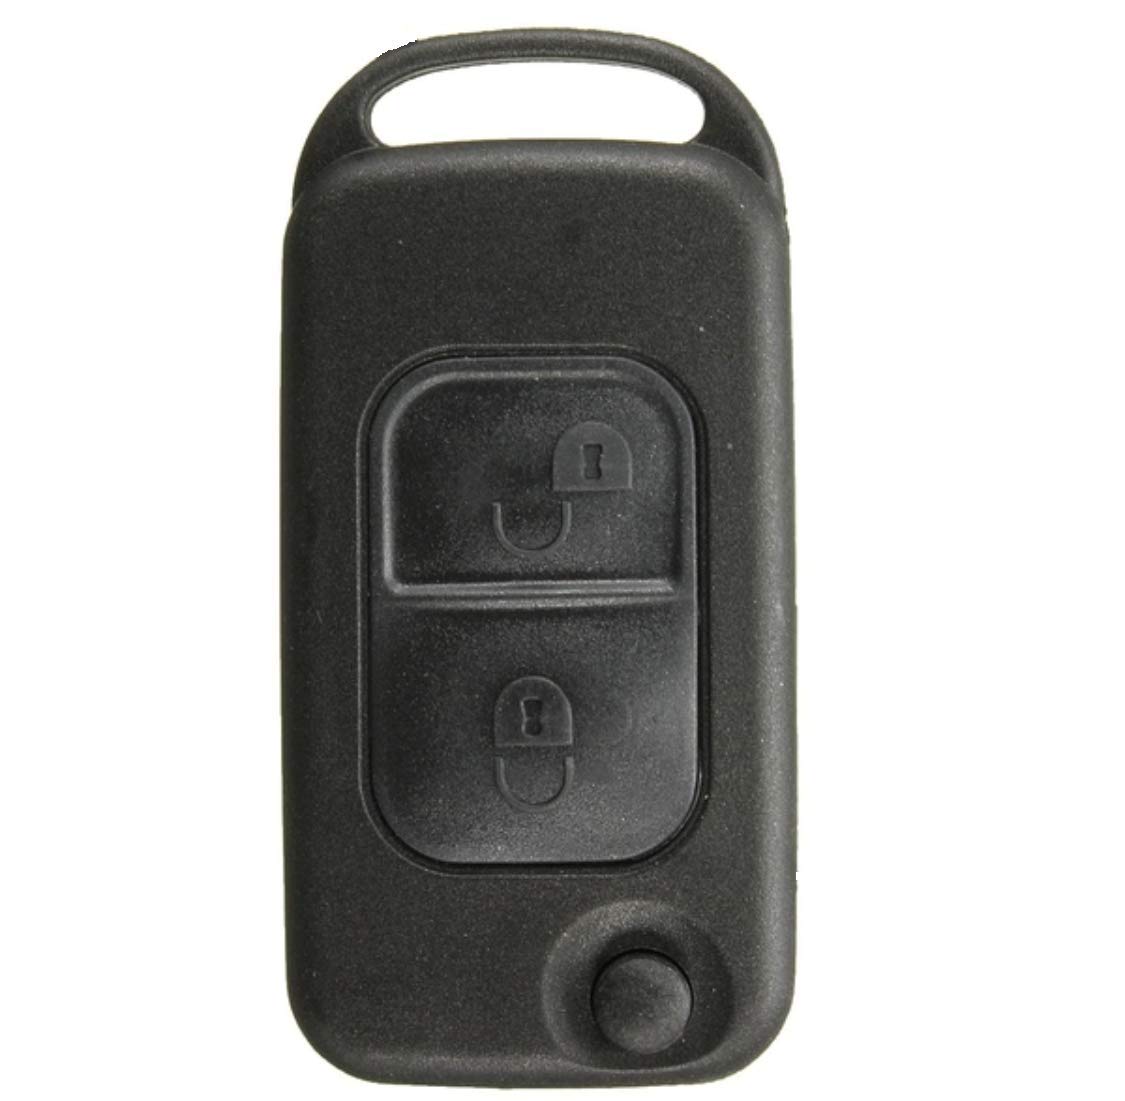 1x Ersatz Schlüsselgehäuse mit 2 Tasten Klappschlüssel Autoschlüssel Chiavi Schlüssel mit Rohlingtyp: HU44 Fernbedienung Funkschlüssel Gehäuse ohne Elektronik - INION von INION